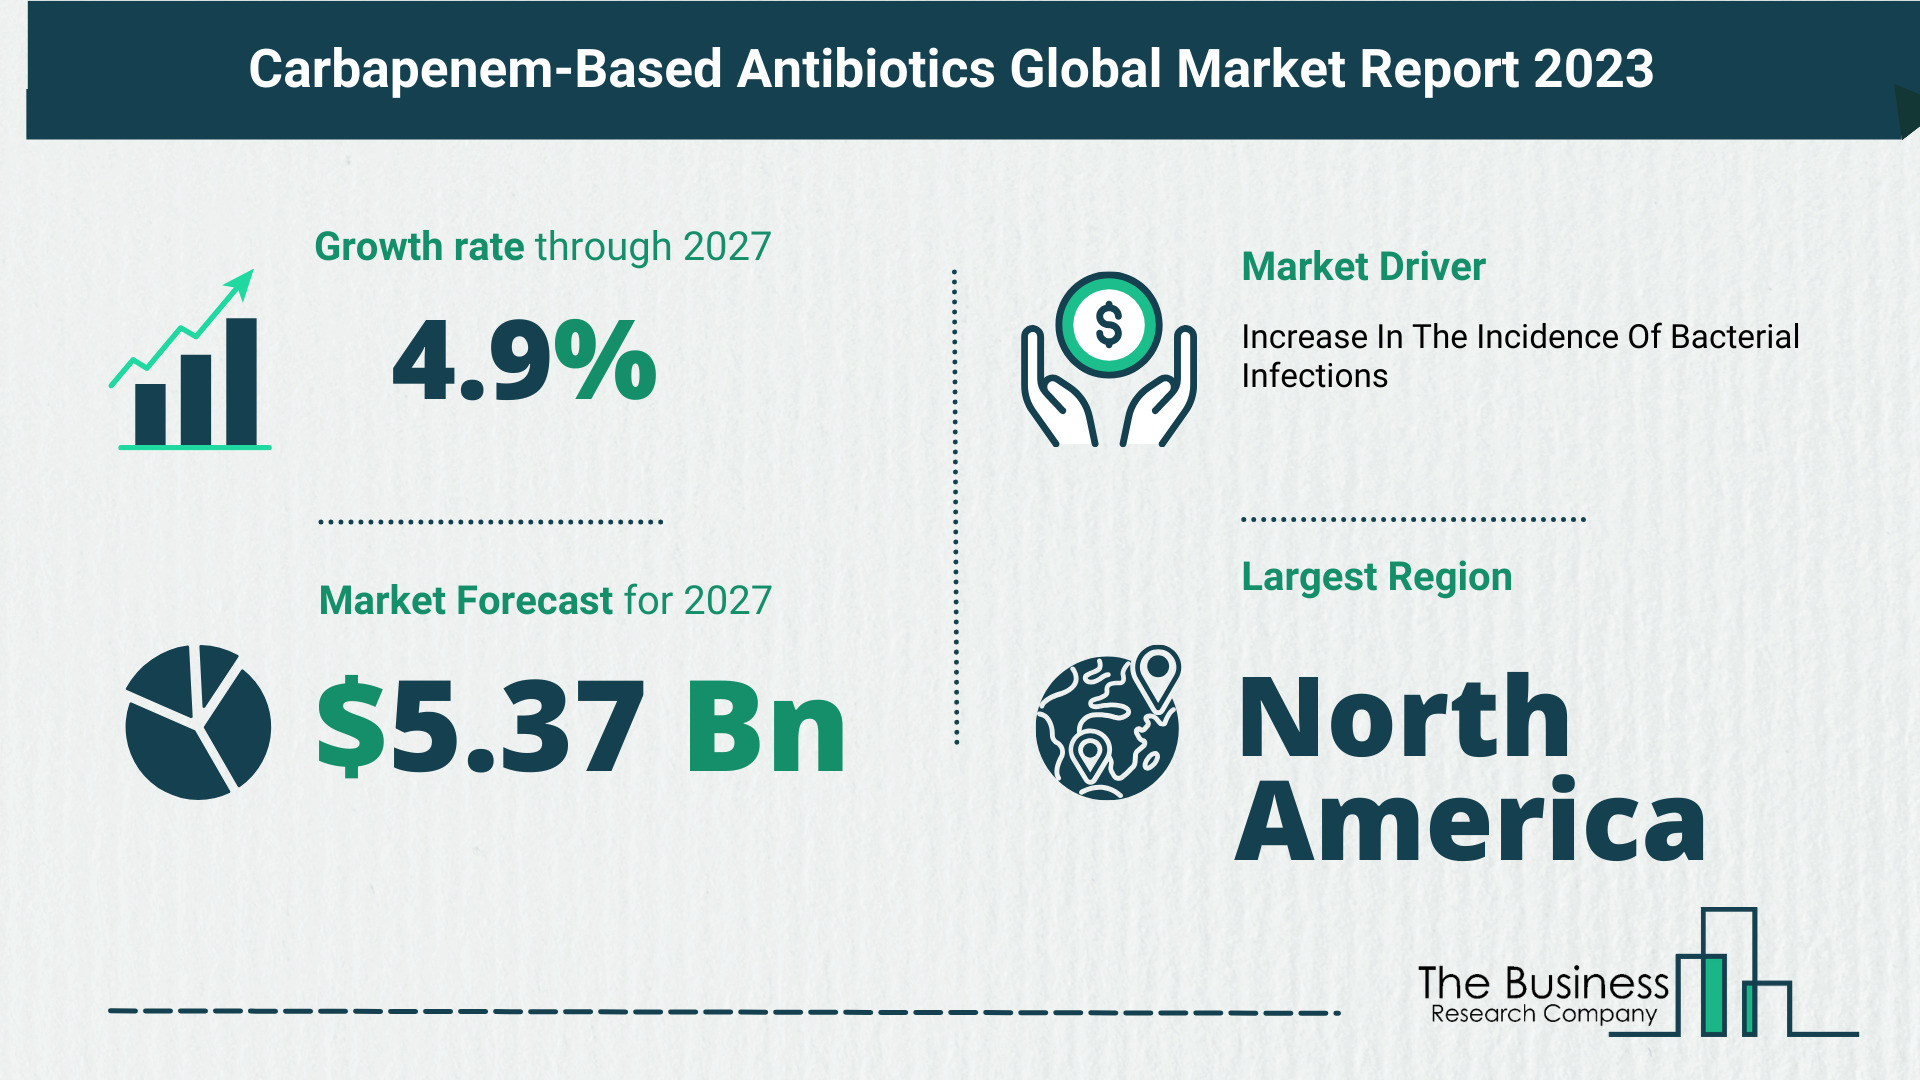 Global Carbapenem-Based Antibiotics Market Size